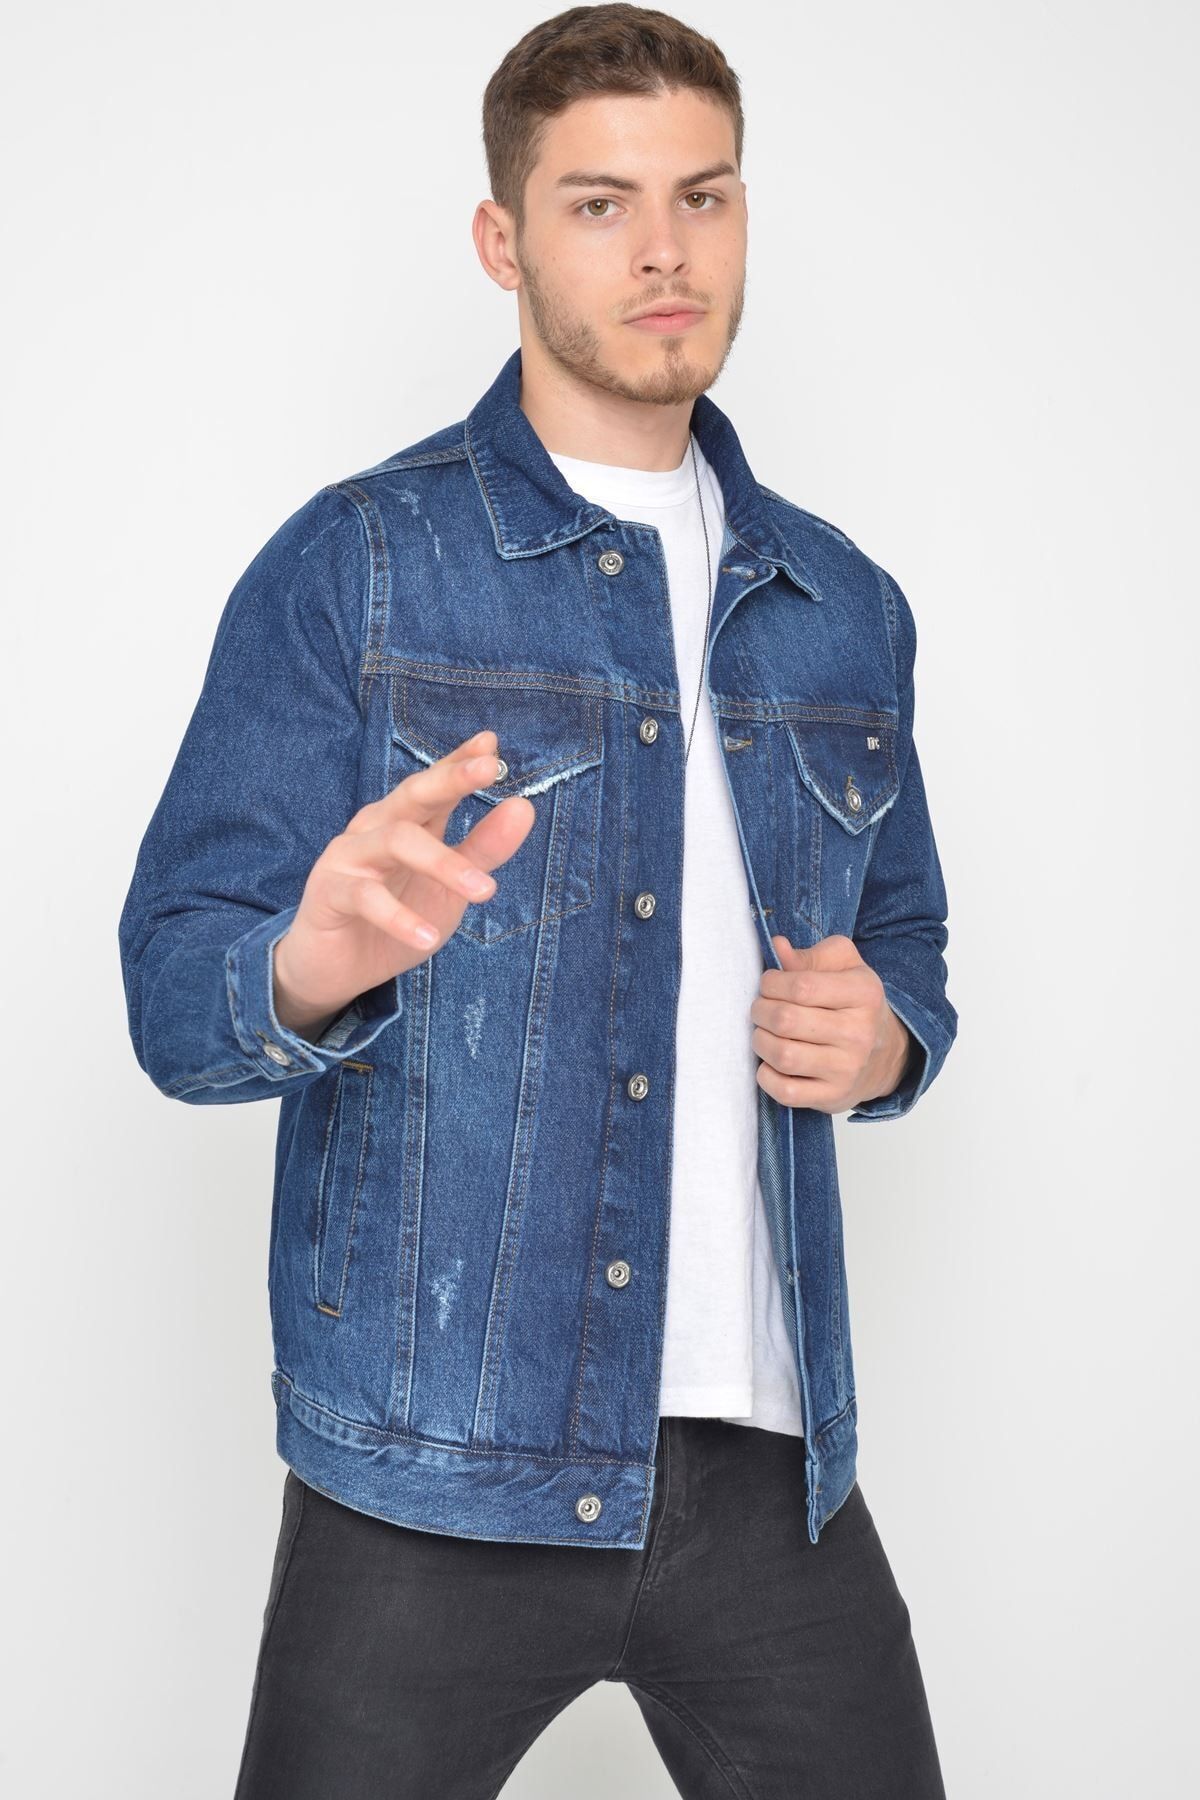 LTC Jeans Erkek Koyu Mavi Yıkamalı Yıpratmalı Düğmeli Kot Ceket